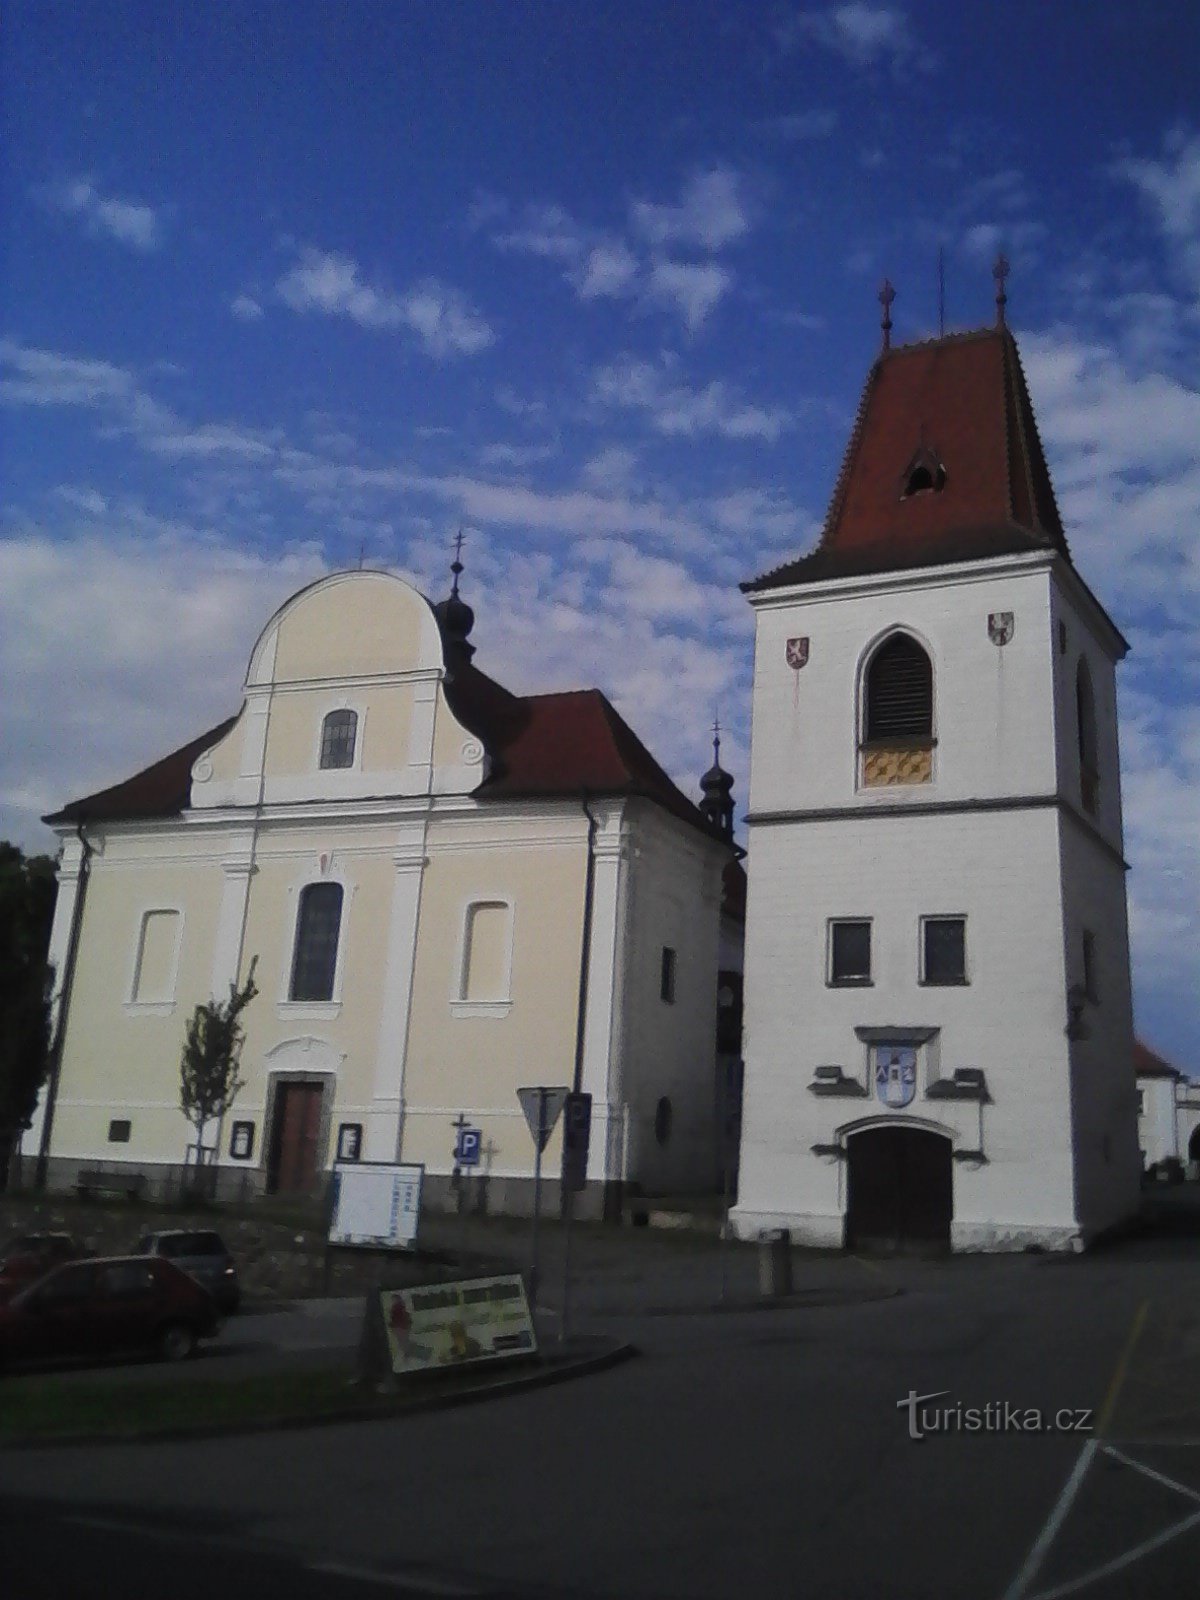 1. Torre sineira e igreja de S. Martin em Mladá Vožica